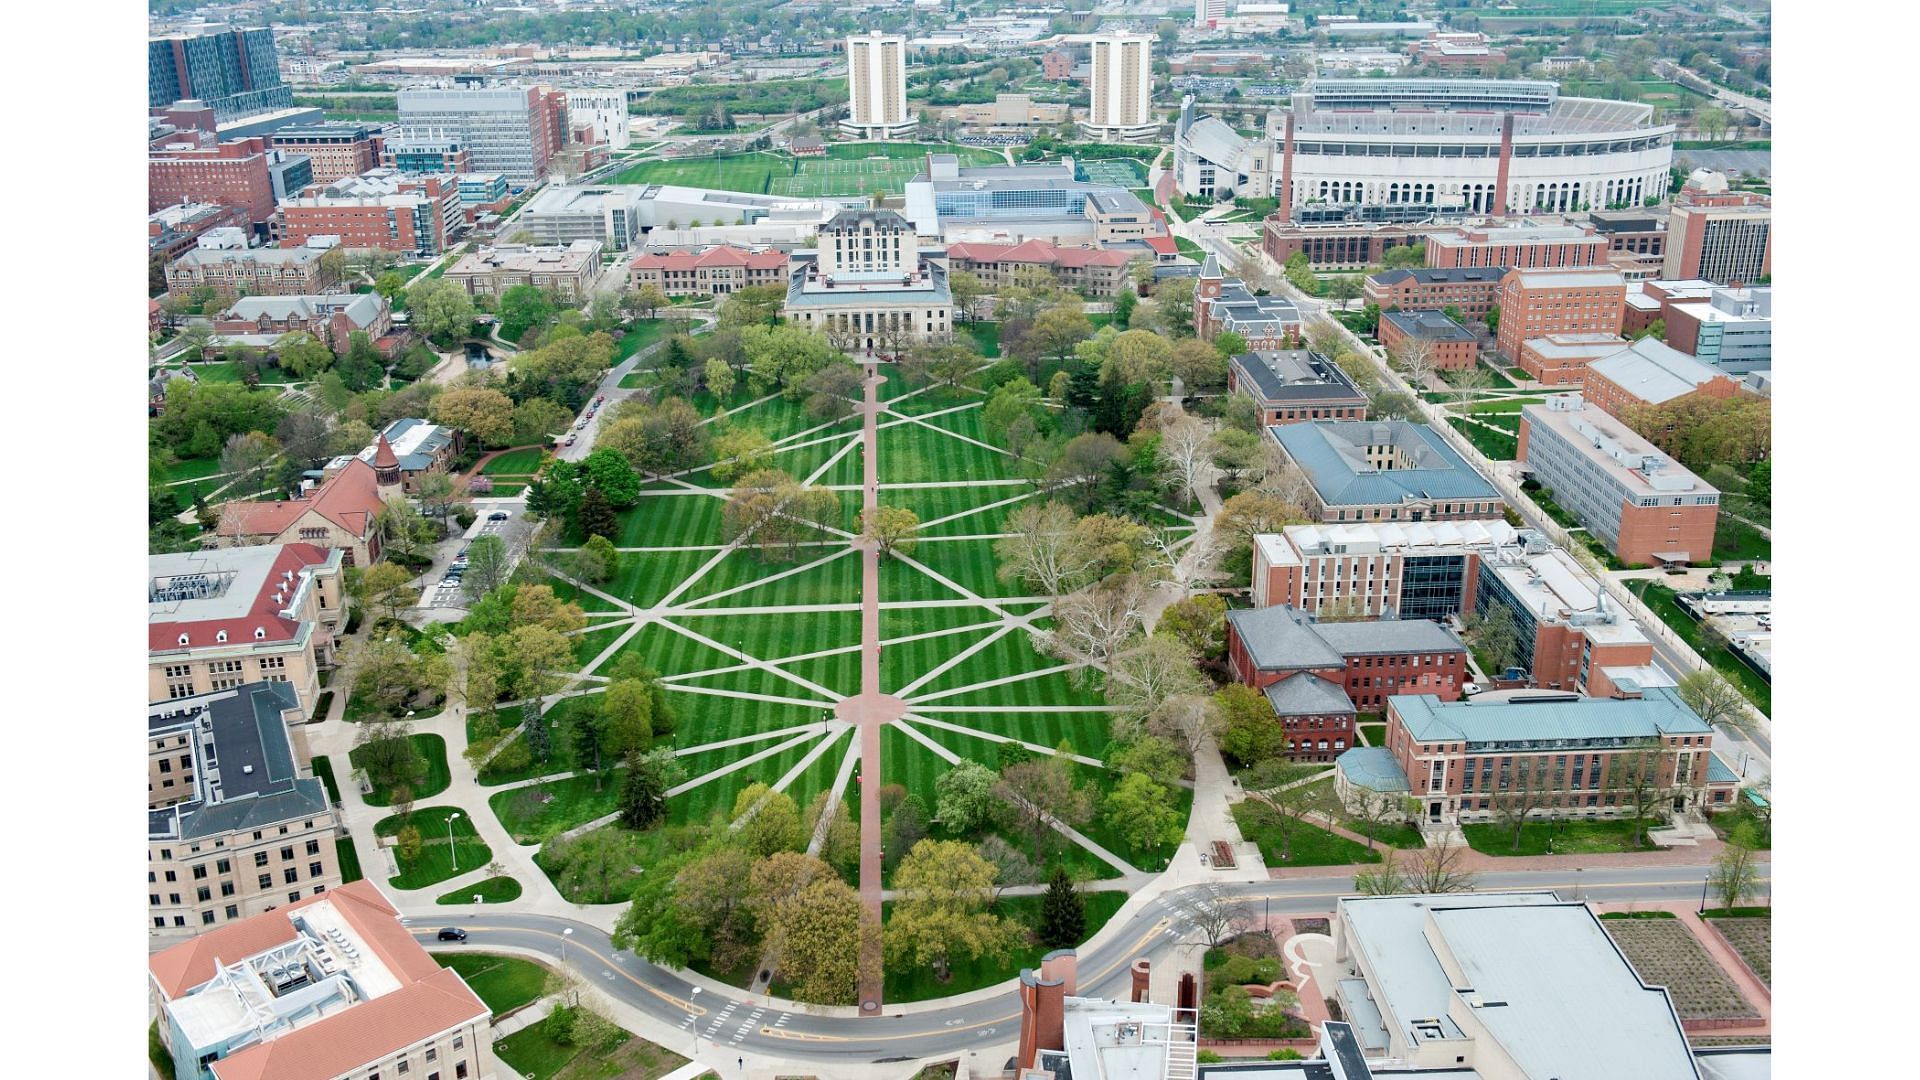 The campus is located in Columbus, Ohio (image via university website)